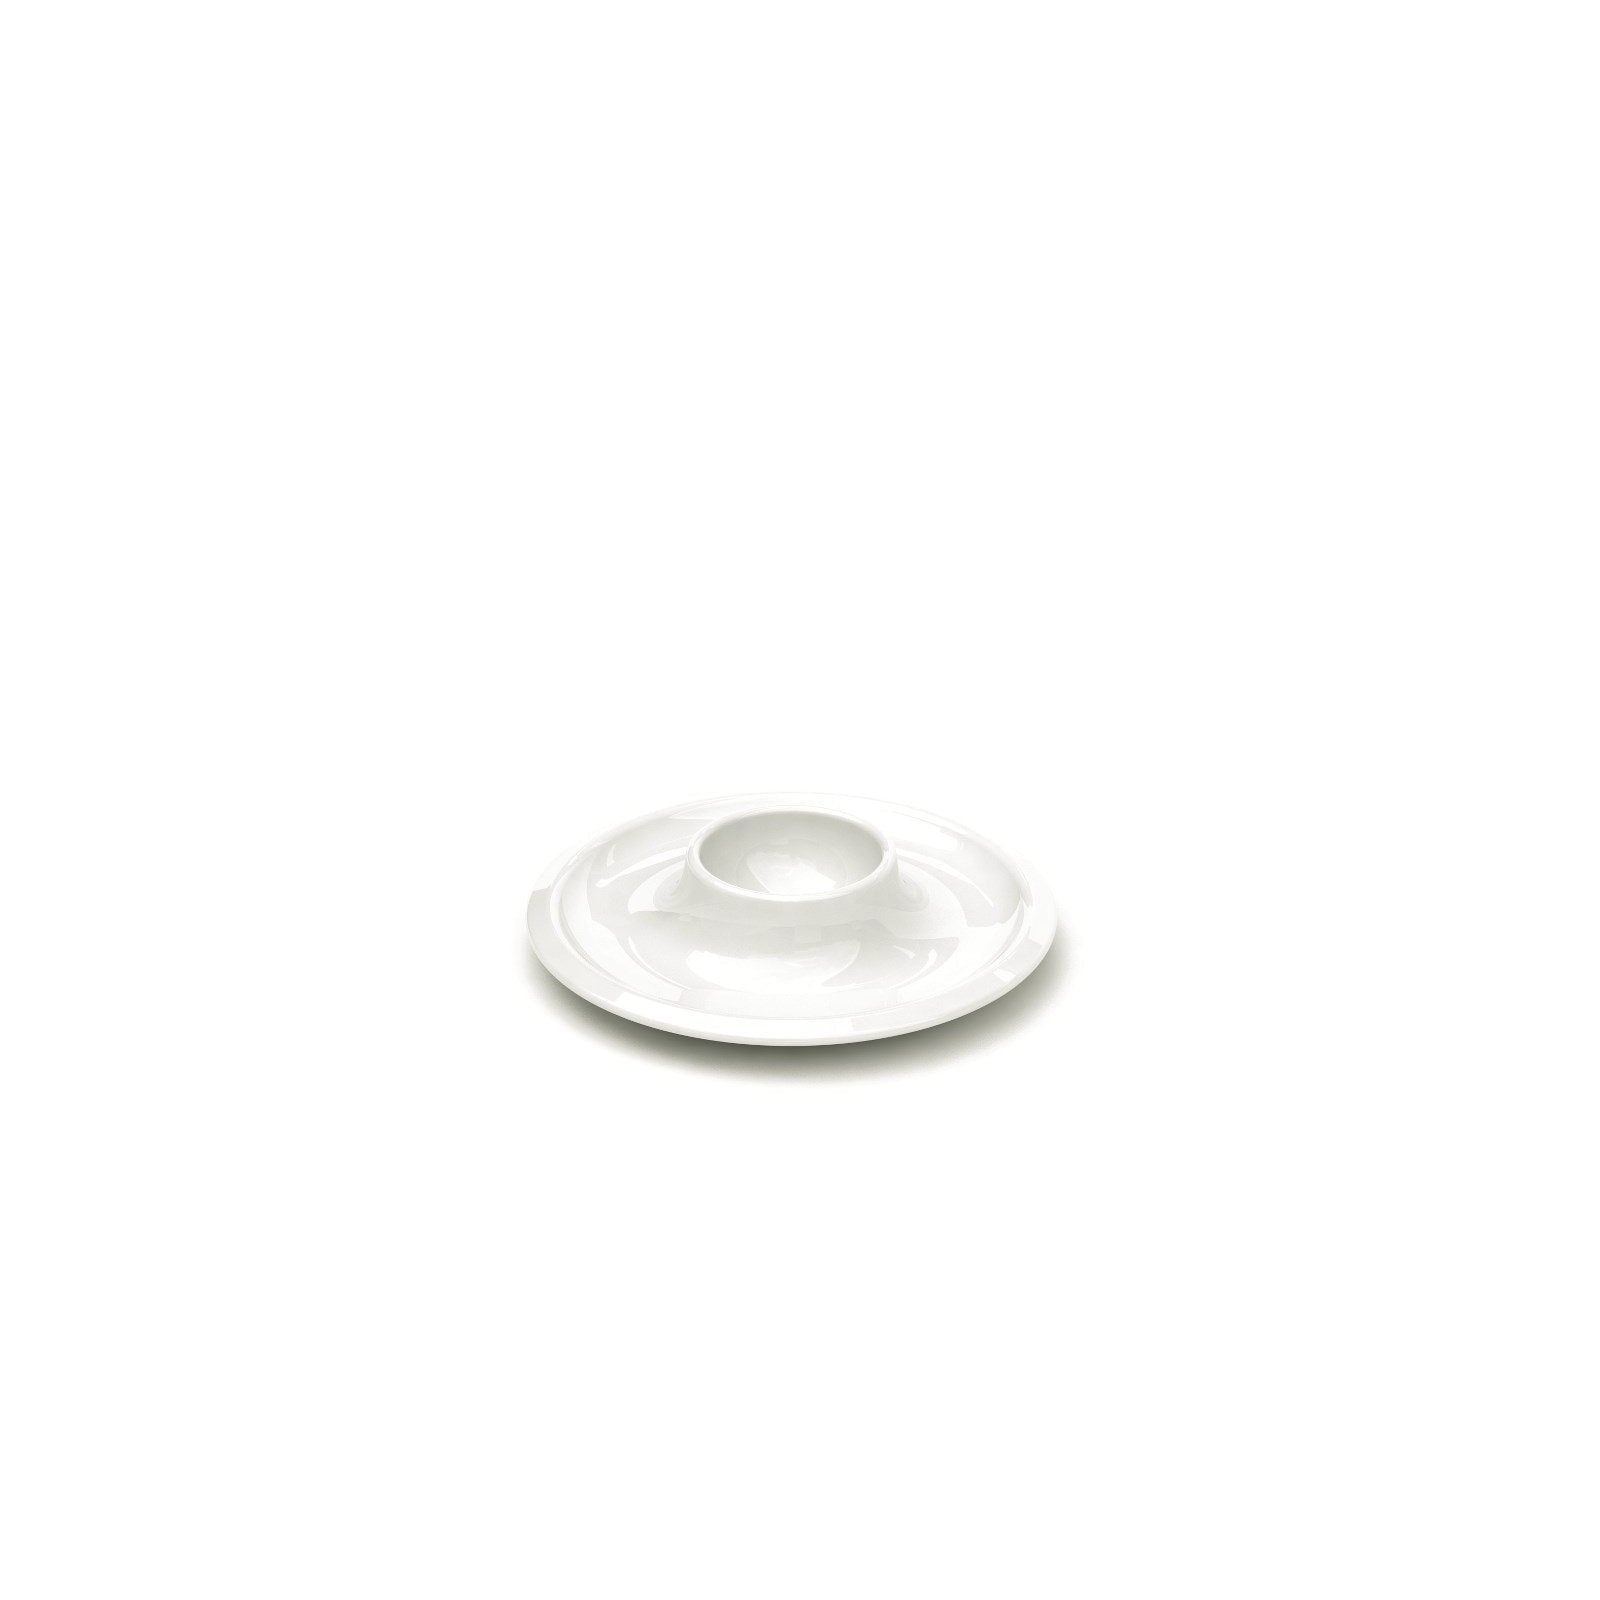 Iittala Tasse d'oeuf raami blanc 2pcs, 12 cm